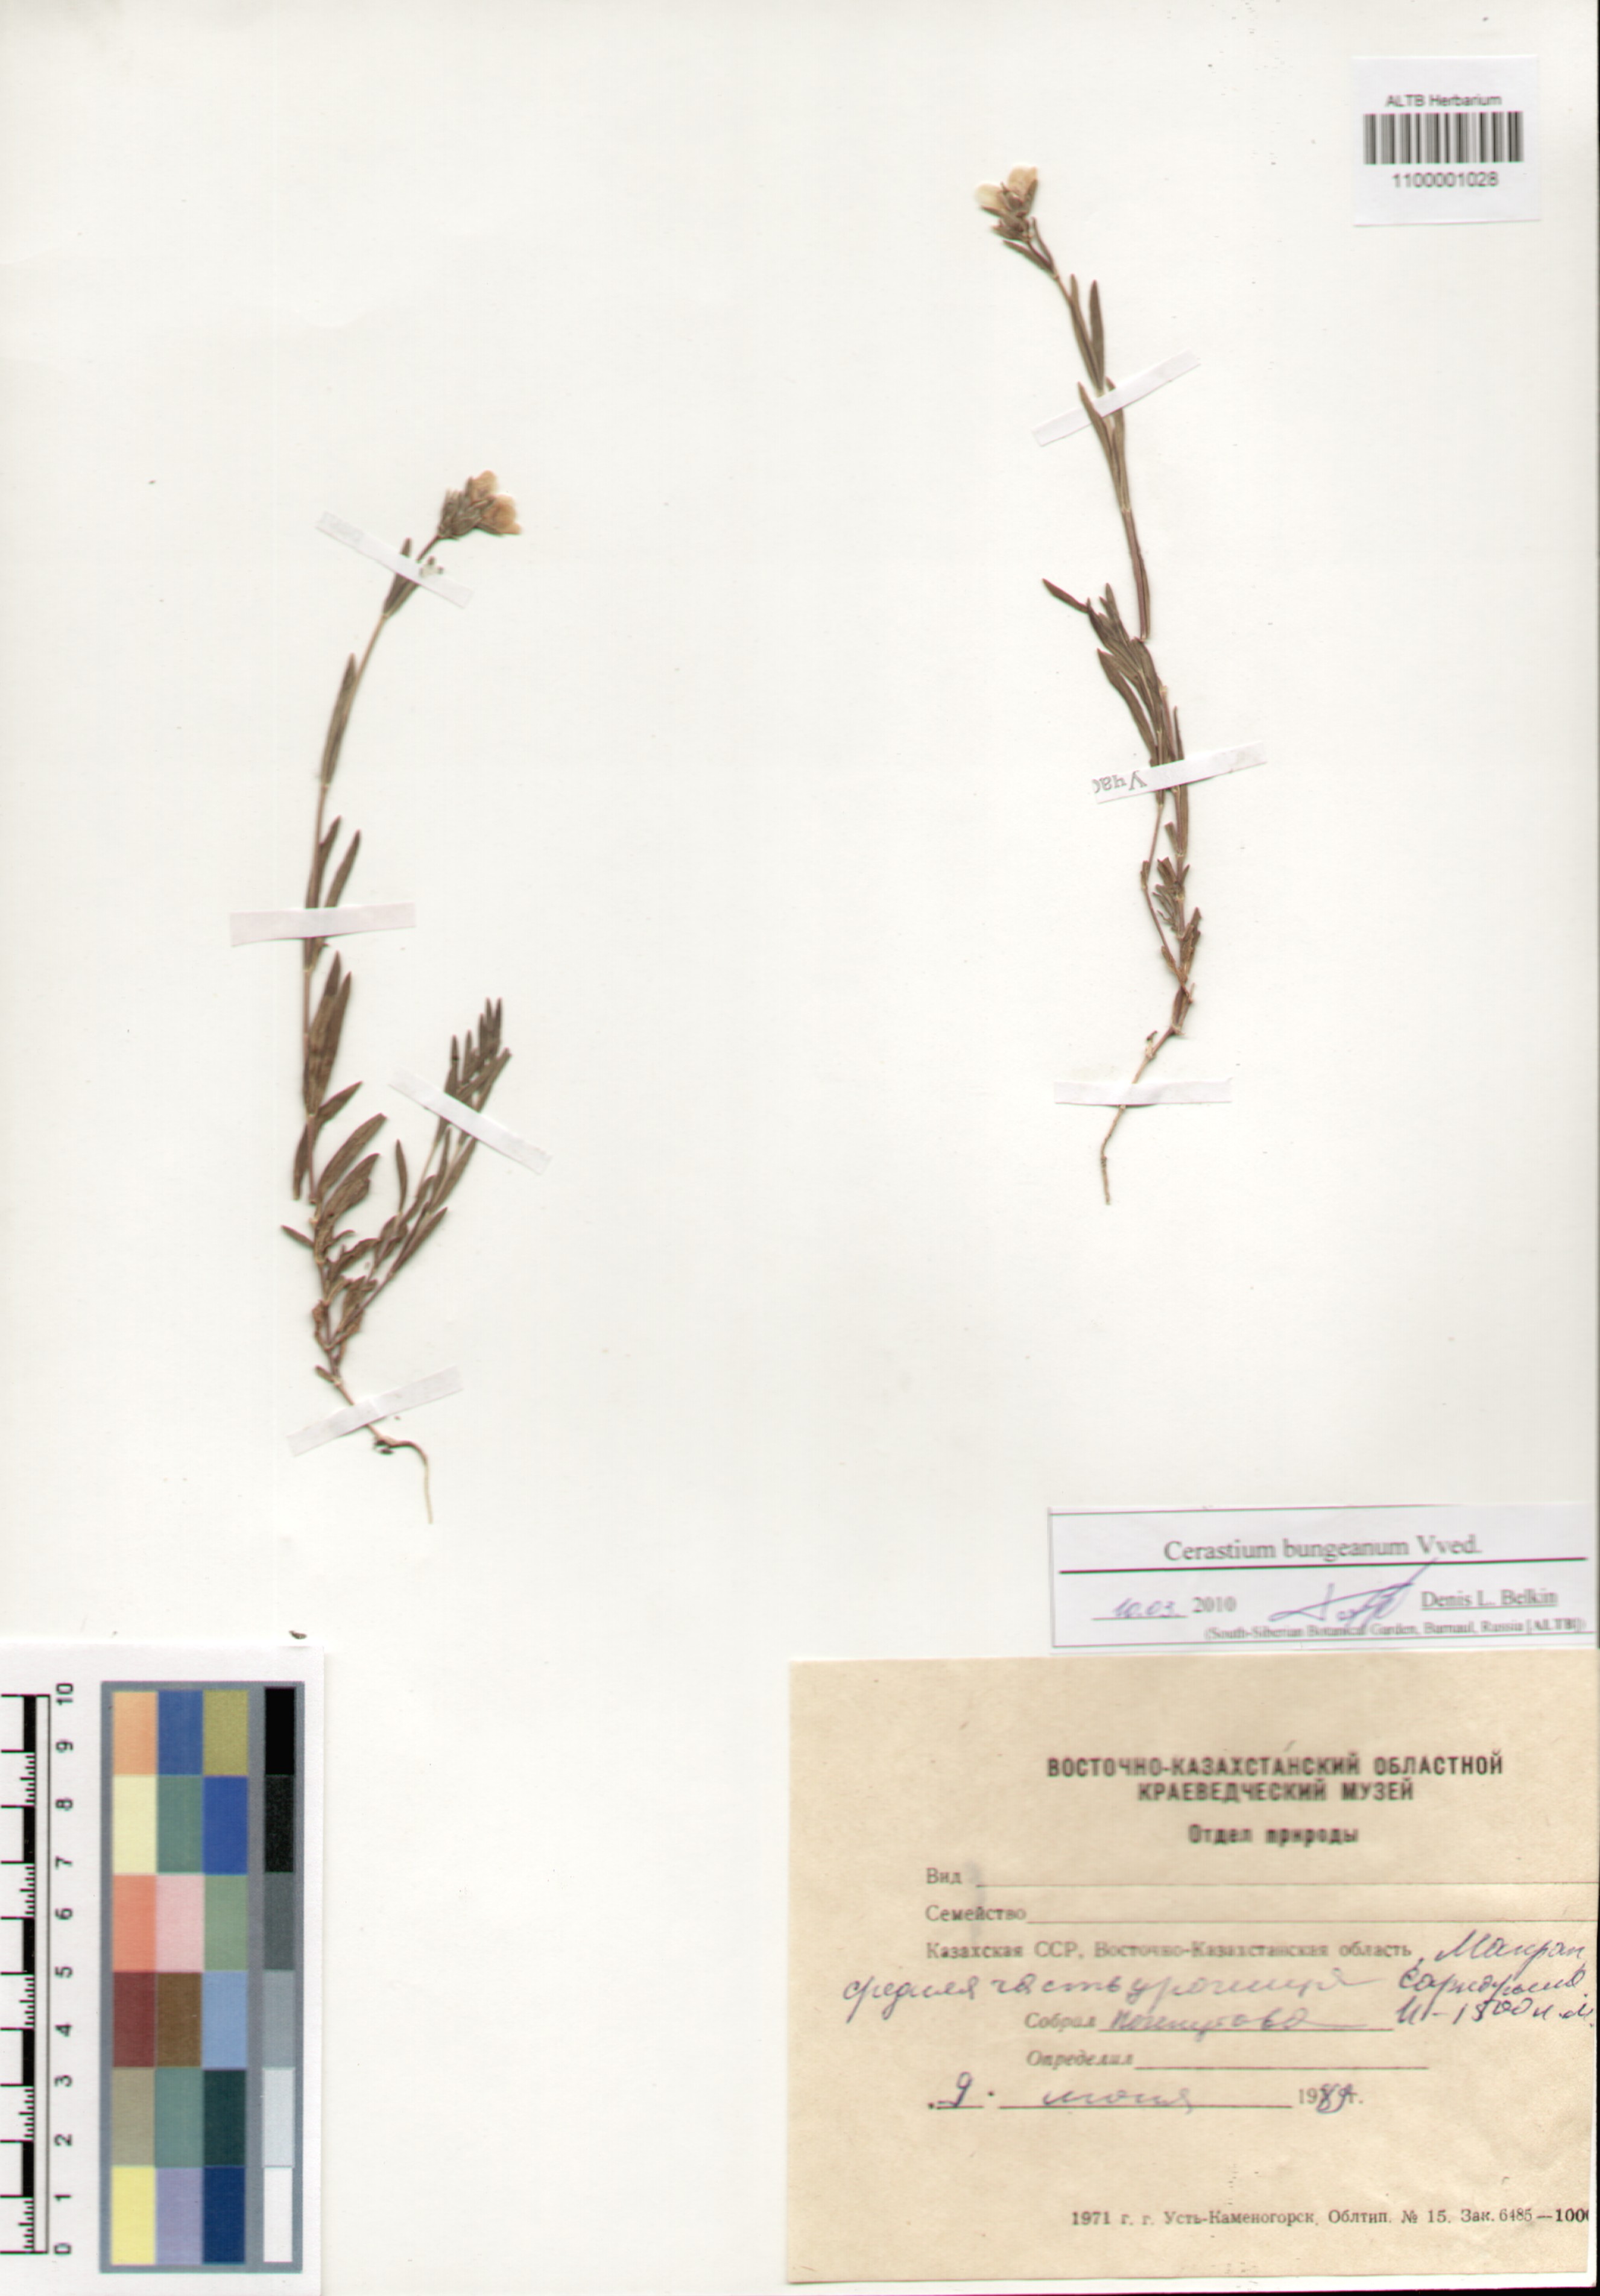 Caryophyllaceae,Cerastium bungeanum Vved.